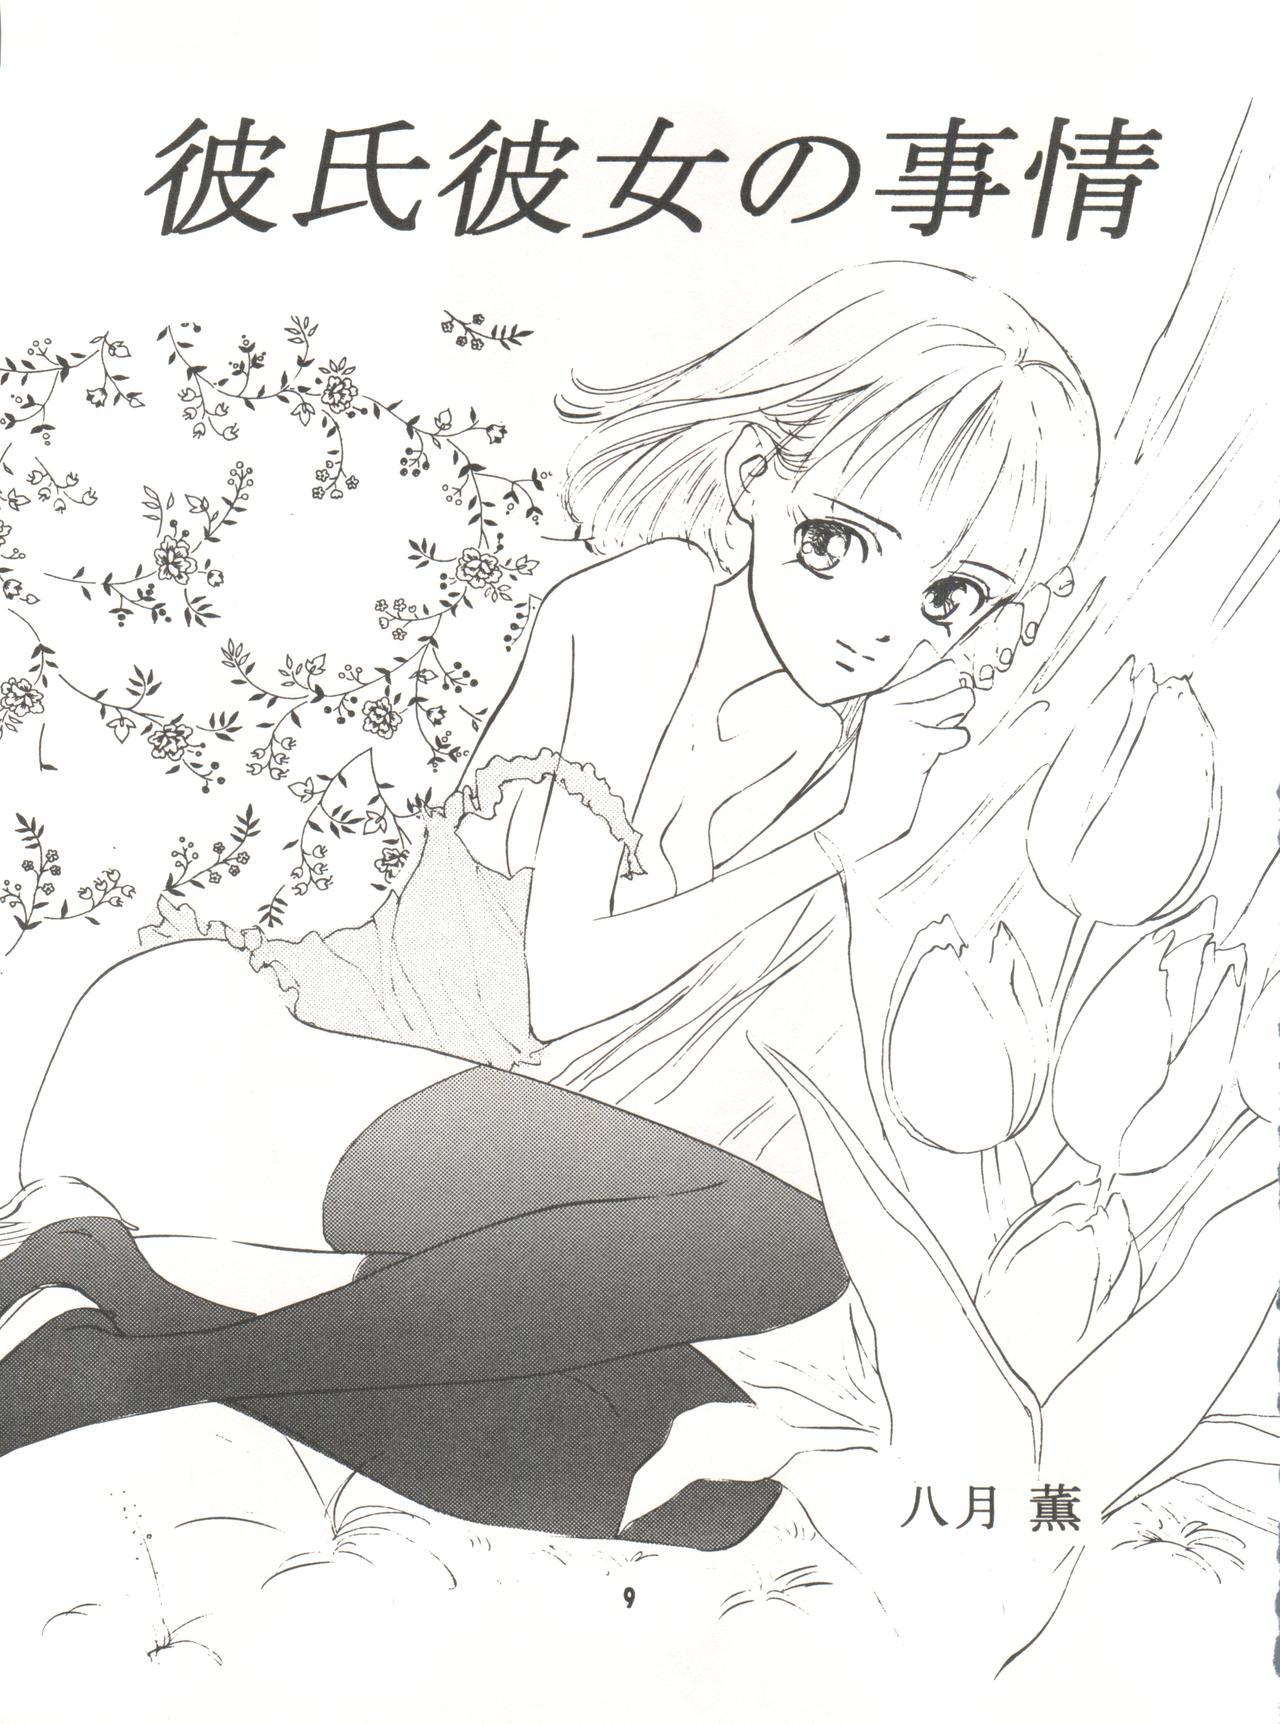 Milfsex Wanpaku Anime Vol. 9 Kare Kano Tokushuu Kanojo wa... - Kare kano Price - Page 11